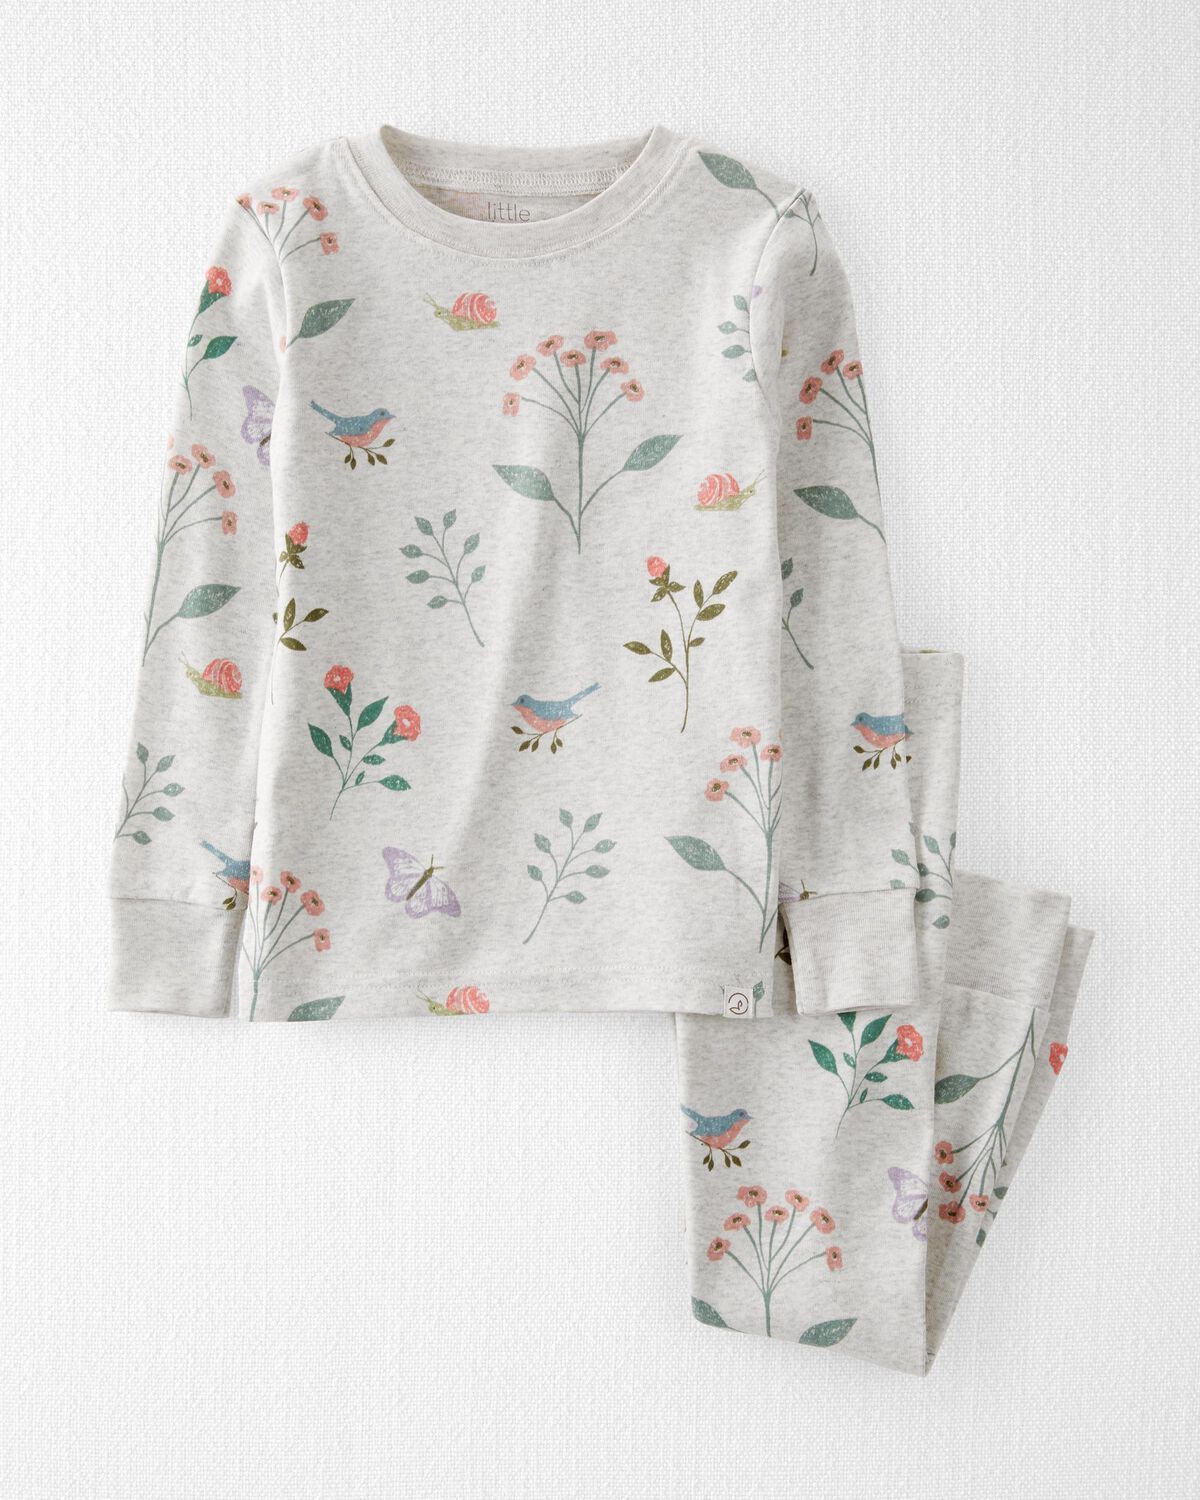 Botanical Print Toddler Organic Cotton 2-Piece Pajamas Set | carters.com | Carter's